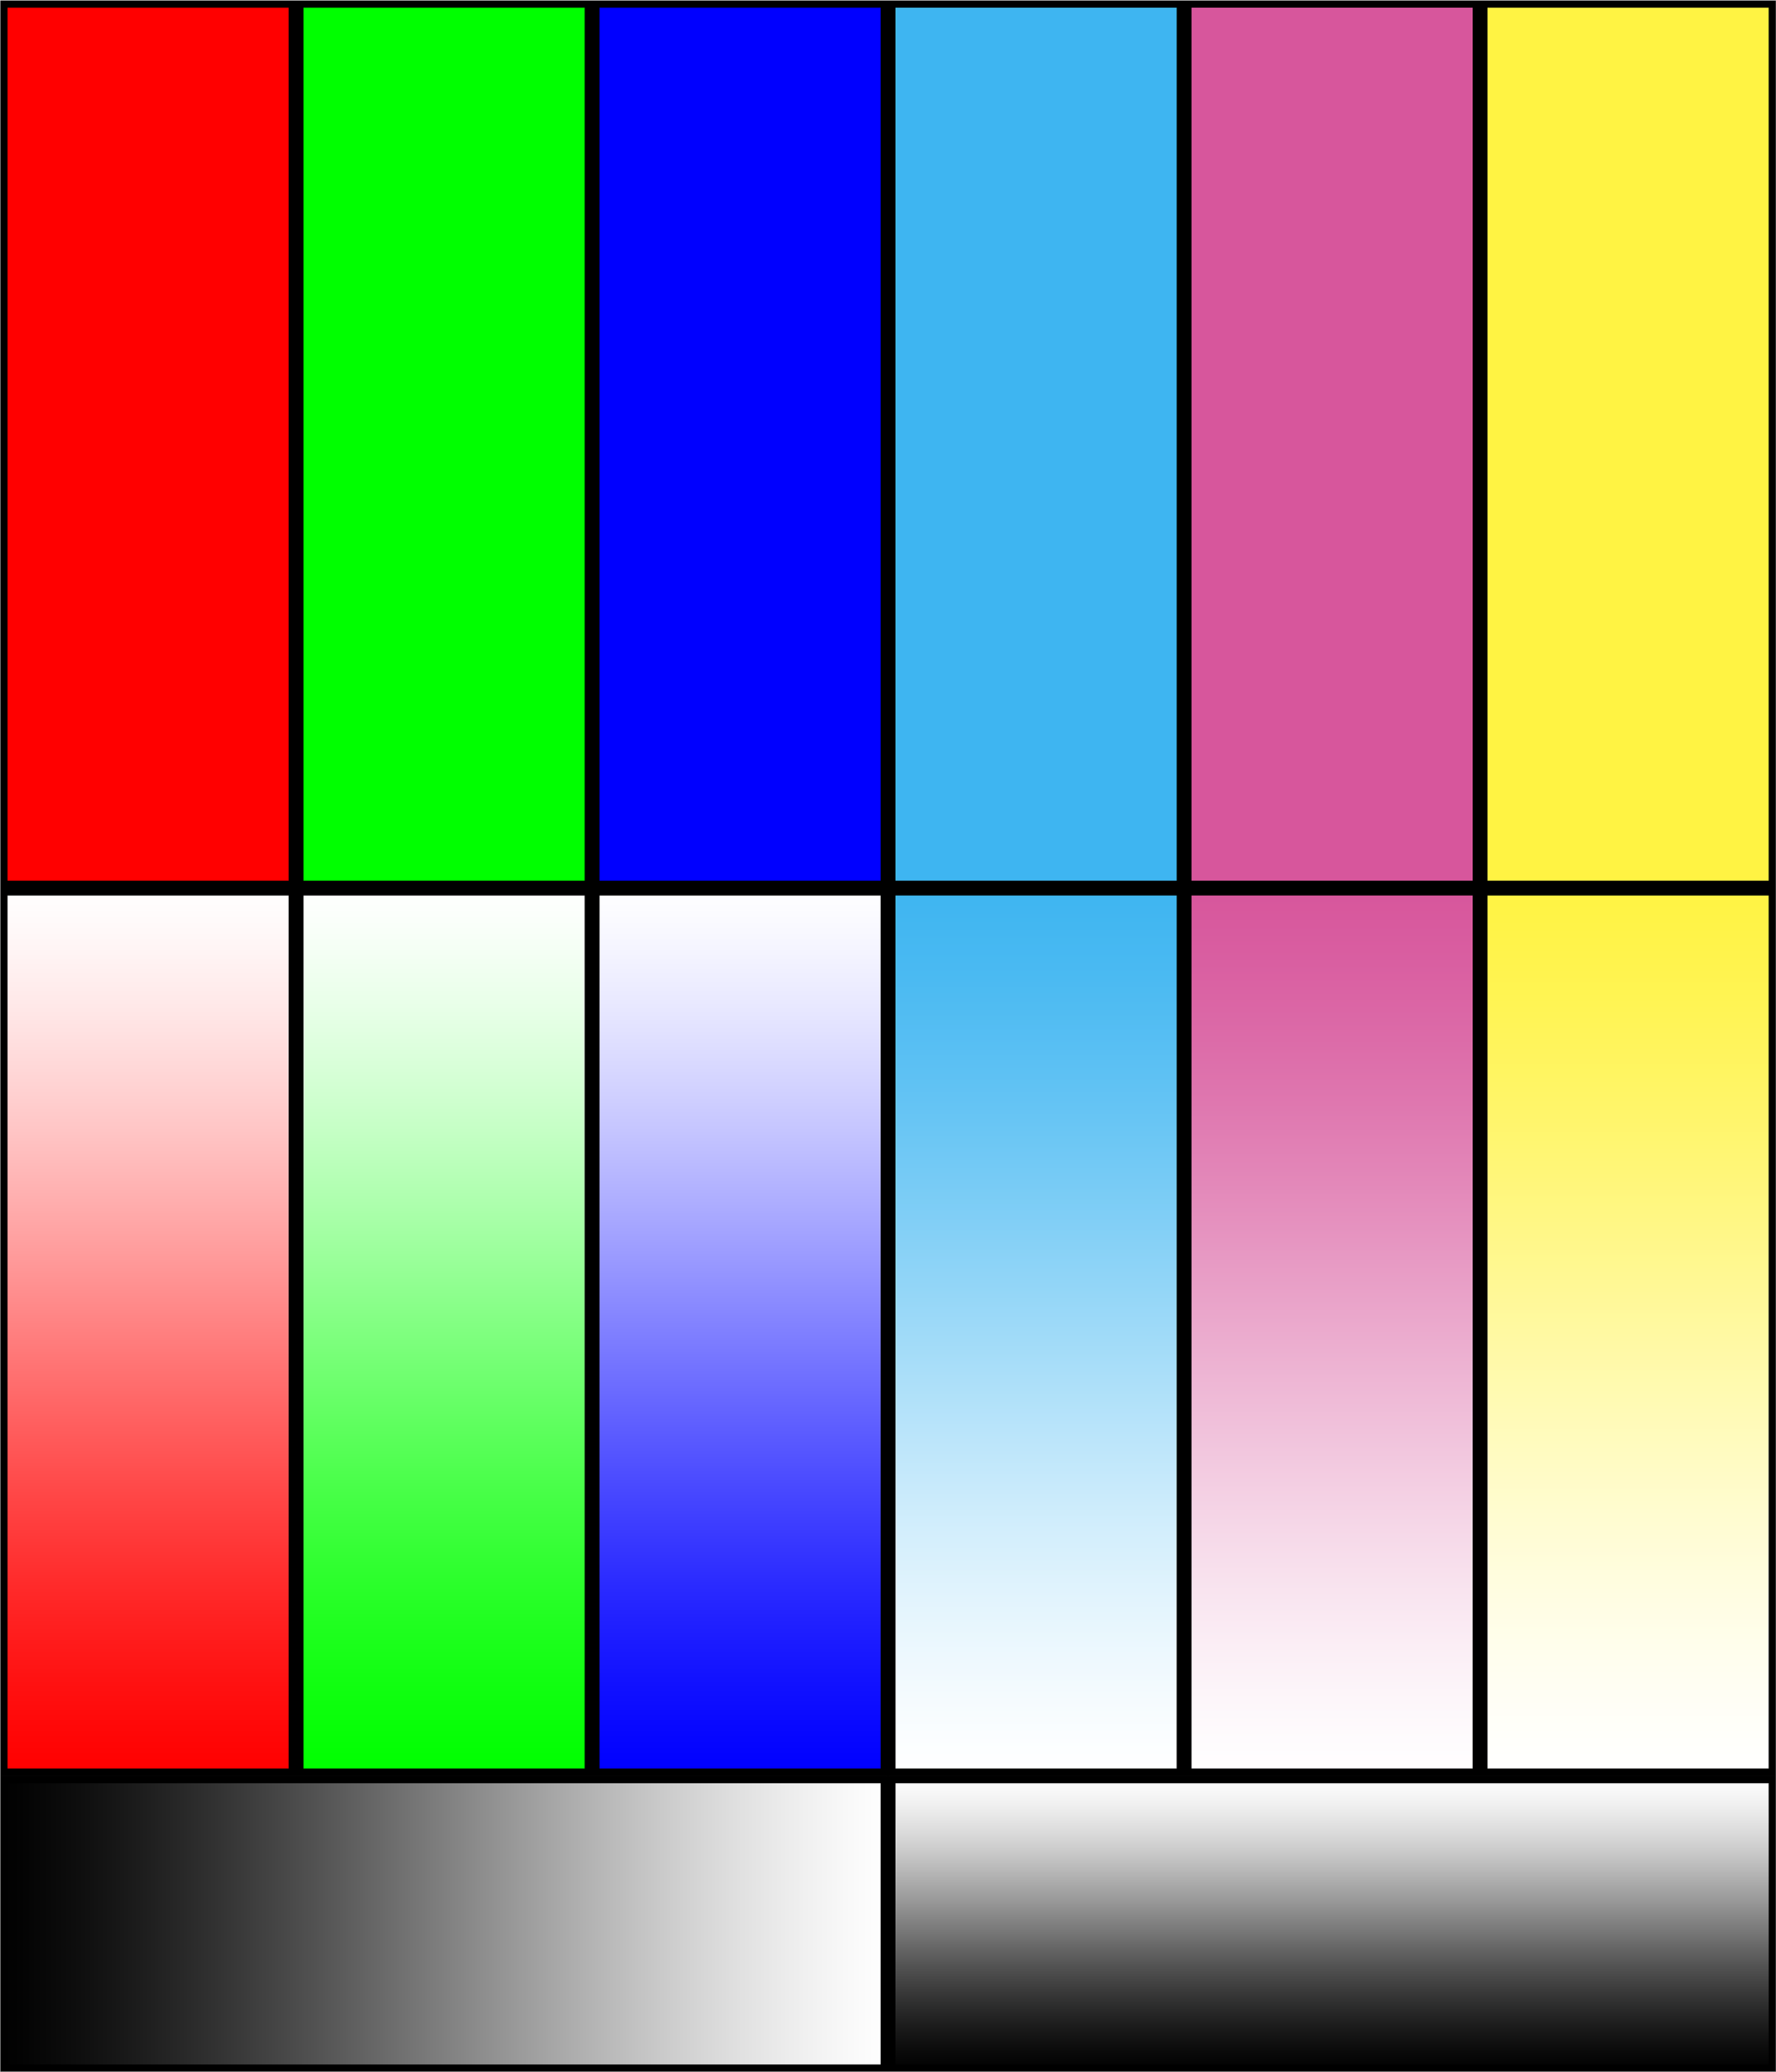 Тестовая печать принтера Эпсон. Тест принтера Эпсон 6 цвета. Тест печати Эпсон 6 цветов. Тестовая печать цветного принтера Эпсон. Картинка цветная для принтера